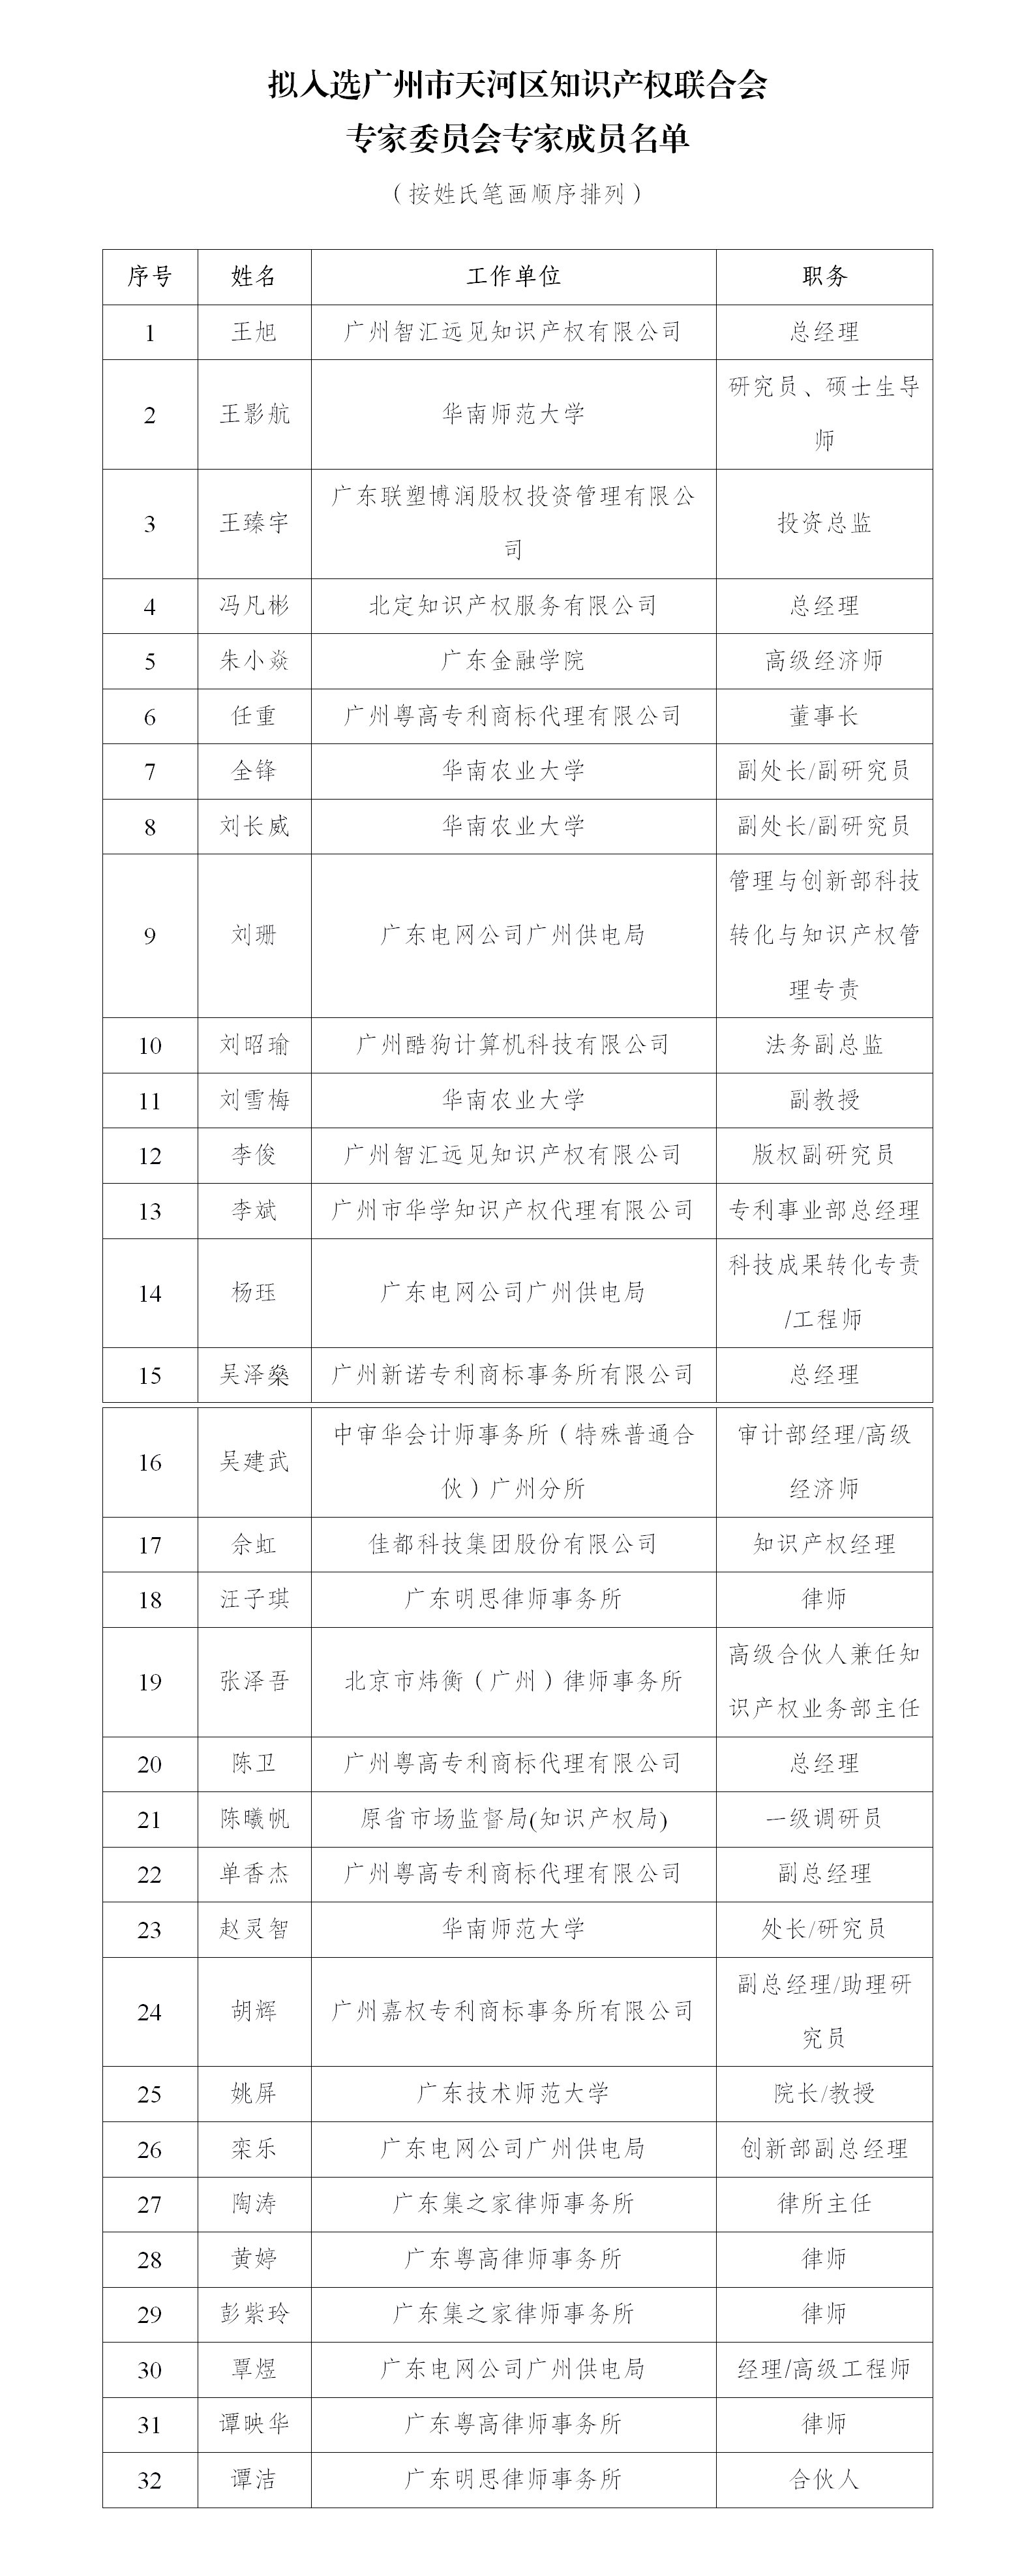 拟入选广州市天河区知识产权联合会专家委员会专家名单_01.png